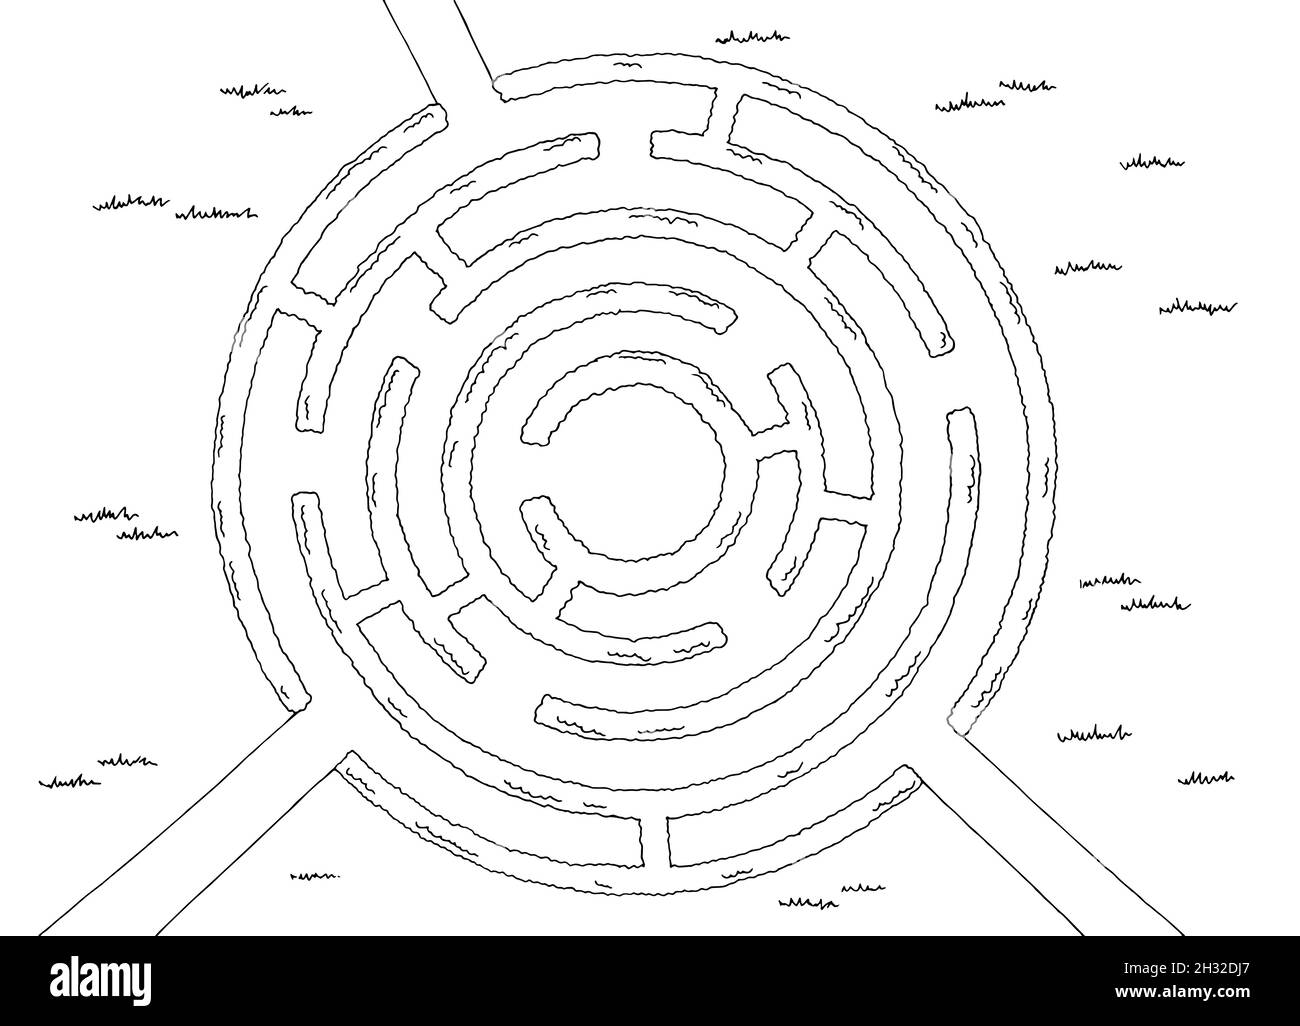 Jardin labyrinthe Bush graphique rond noir blanc esquisse haut vue aérienne illustration vecteur Illustration de Vecteur